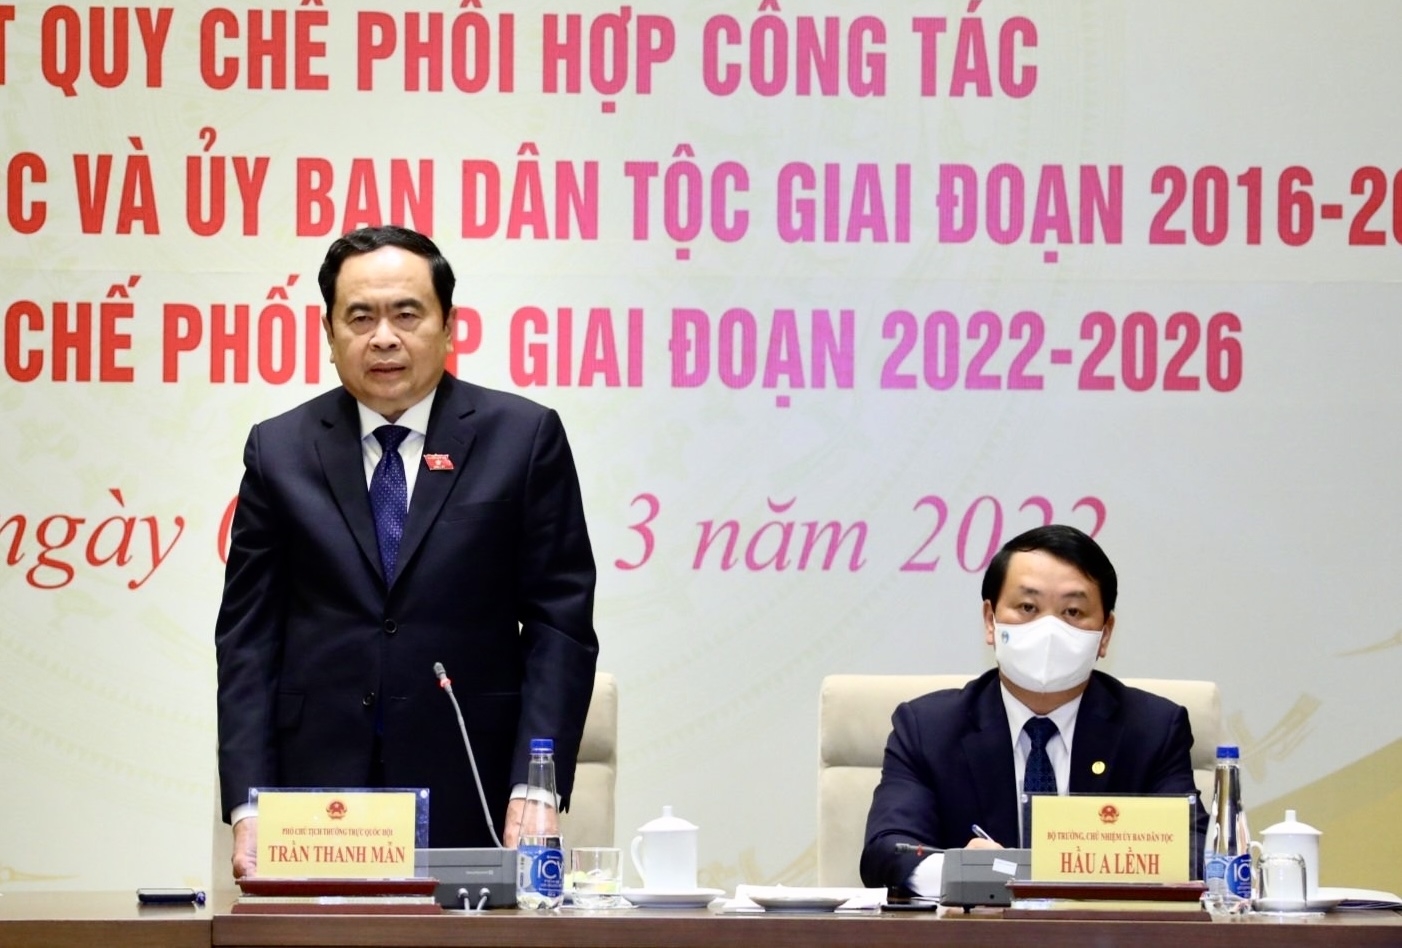 Ủy viên Bộ Chính trị, Phó Chủ tịch Thường trực Quốc hội Trần Thanh Mẫn phát biểu tại Hội nghị Tổng kết